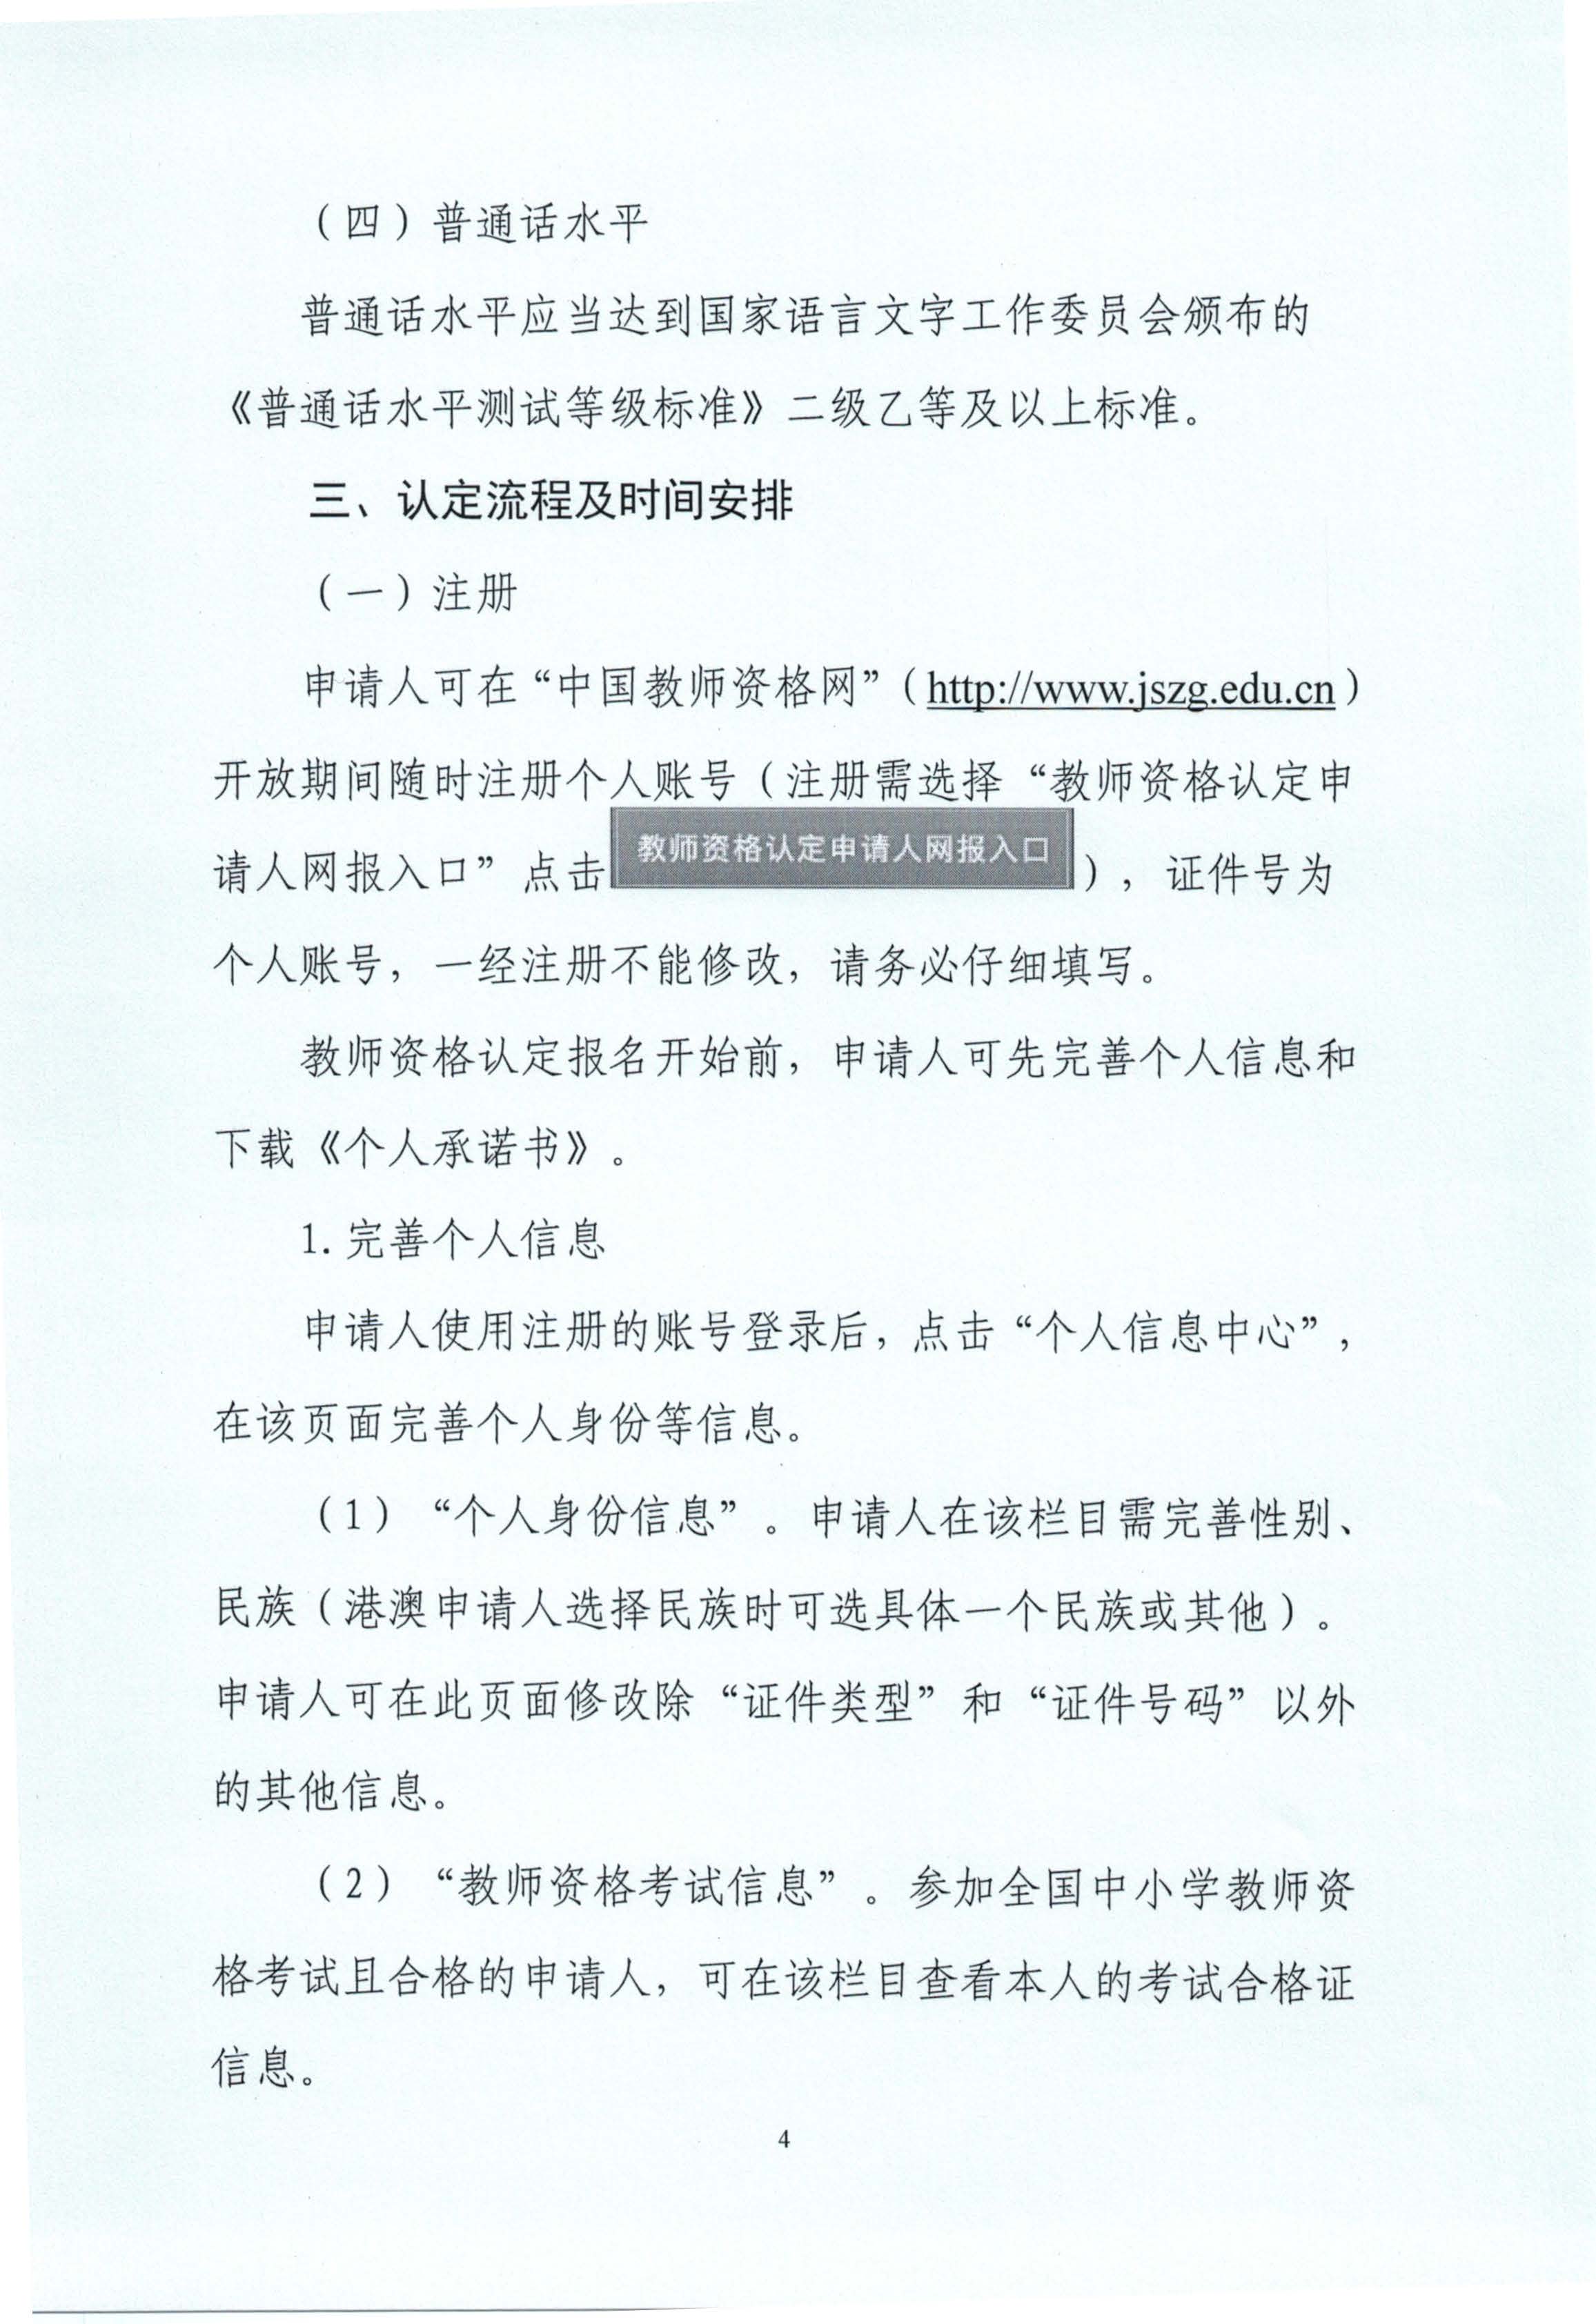 丰顺县2020年上半年中小学教师资格认定公告_页面_04.jpg